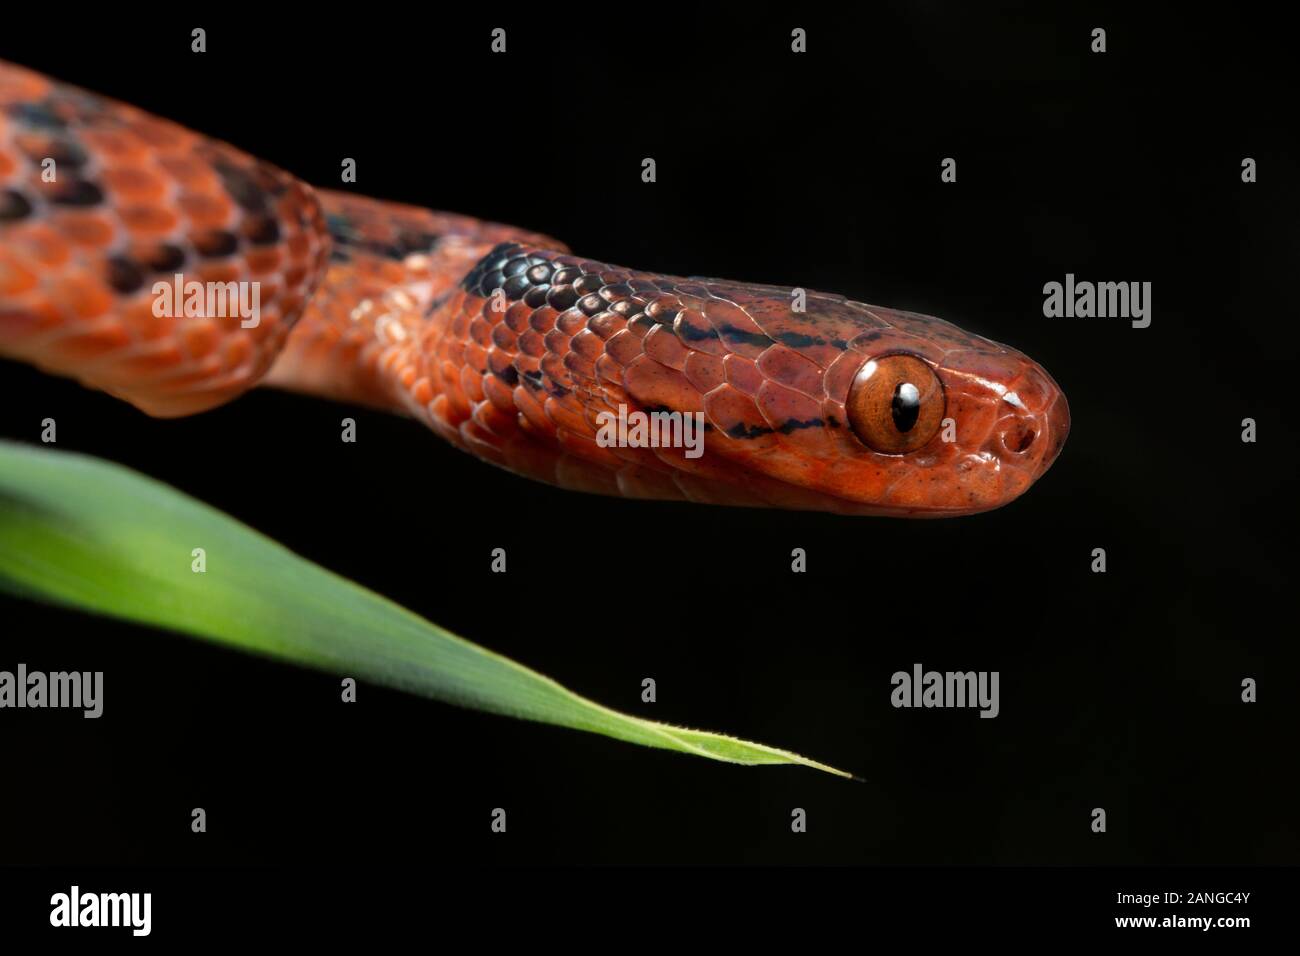 La politique commune de slug, serpent, Holiday Inn monticola est une espèce de serpents trouvés dans le nord-est de l'Inde Banque D'Images